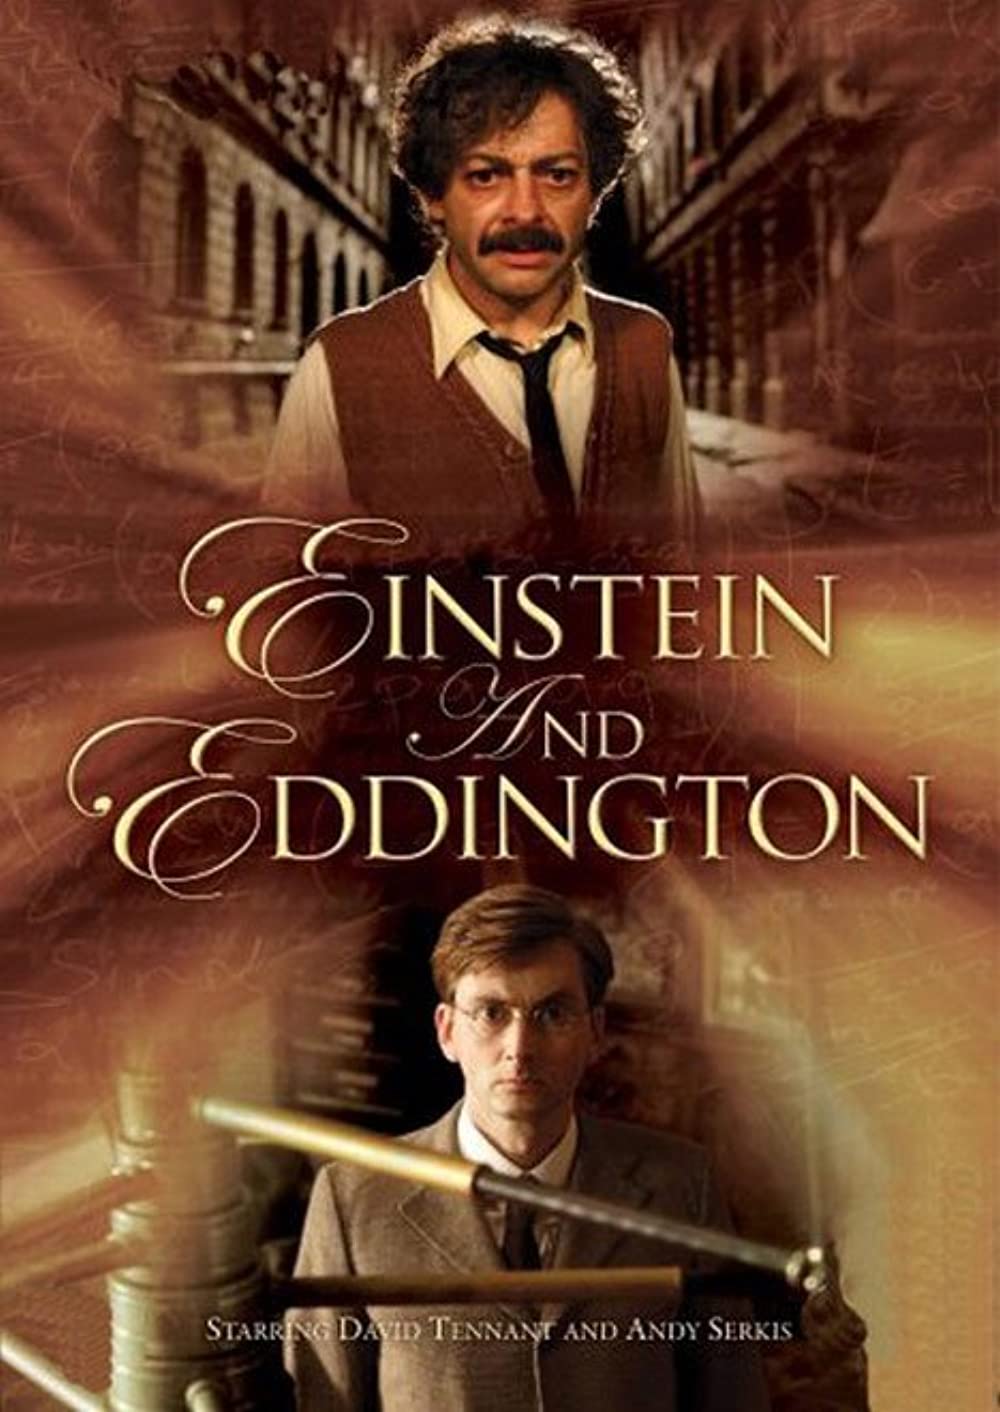 ดูหนังออนไลน์HD Einstein and Eddington (2008) ไอน์สไตน์&เอ็ดดิงตัน คู่นักวิทย์พิศจักรวาล หนังเต็มเรื่อง หนังมาสเตอร์ ดูหนังHD ดูหนังออนไลน์ ดูหนังใหม่